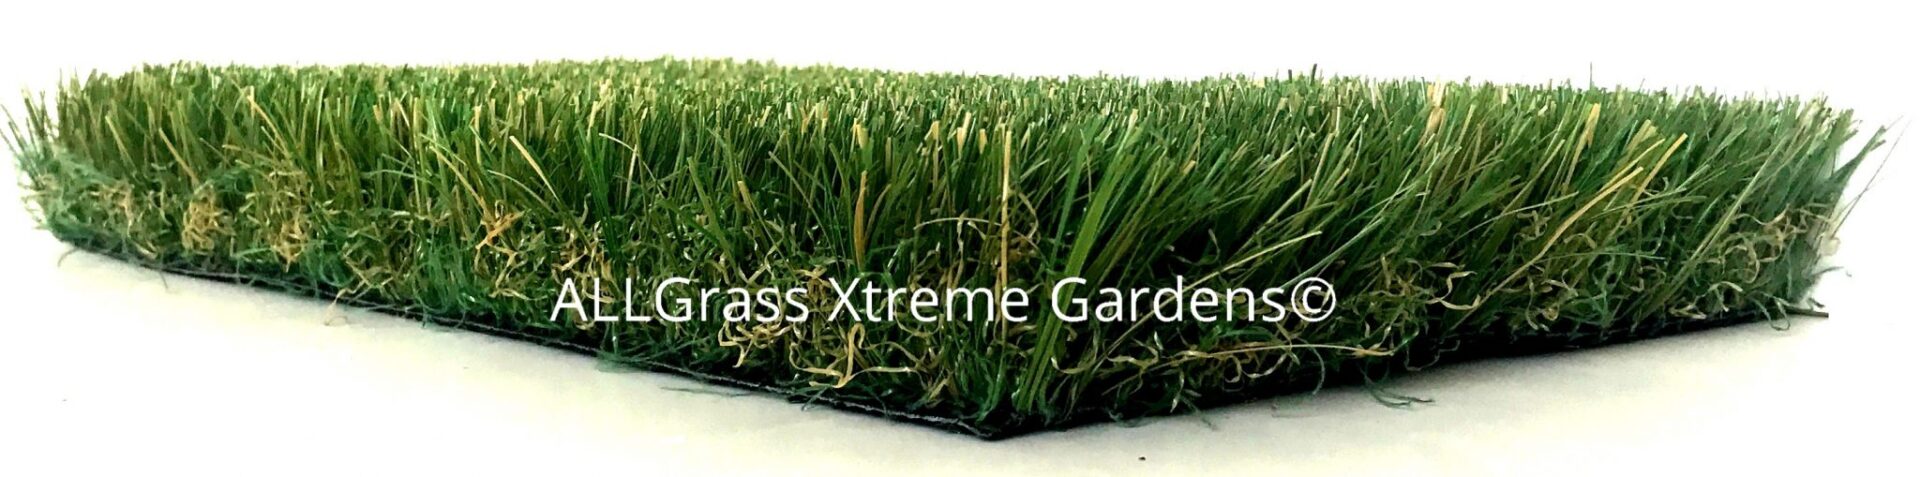 artificial grass for children